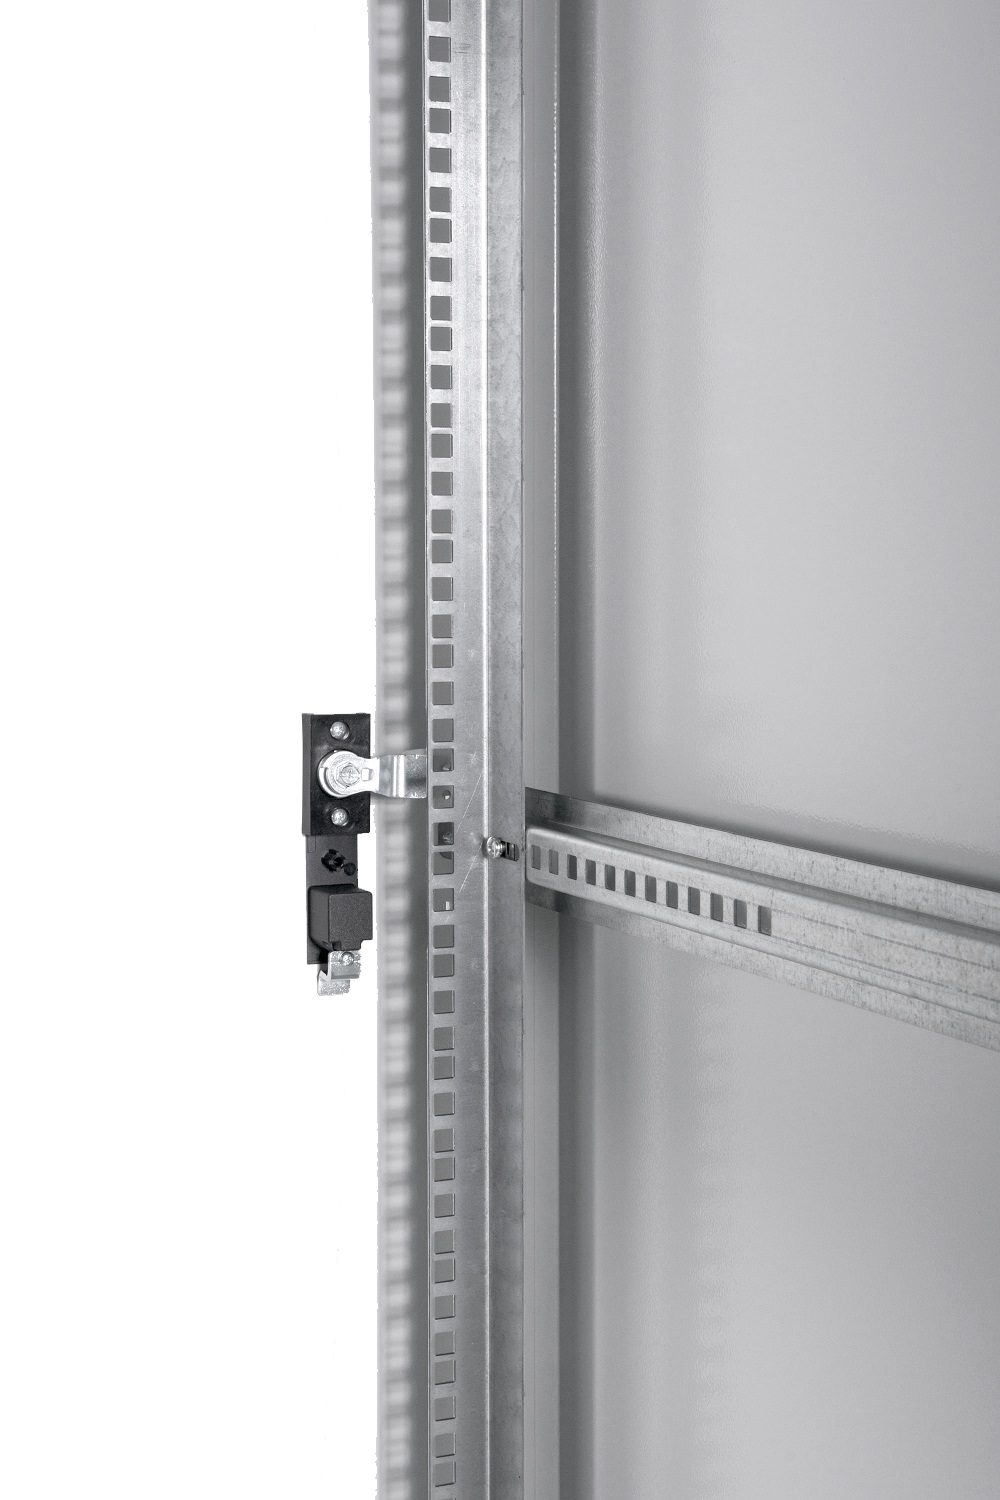 Шкаф телекоммуникационный напольный ЭКОНОМ 48U (800 × 800) дверь перфорированная 2 шт. от ЦМО